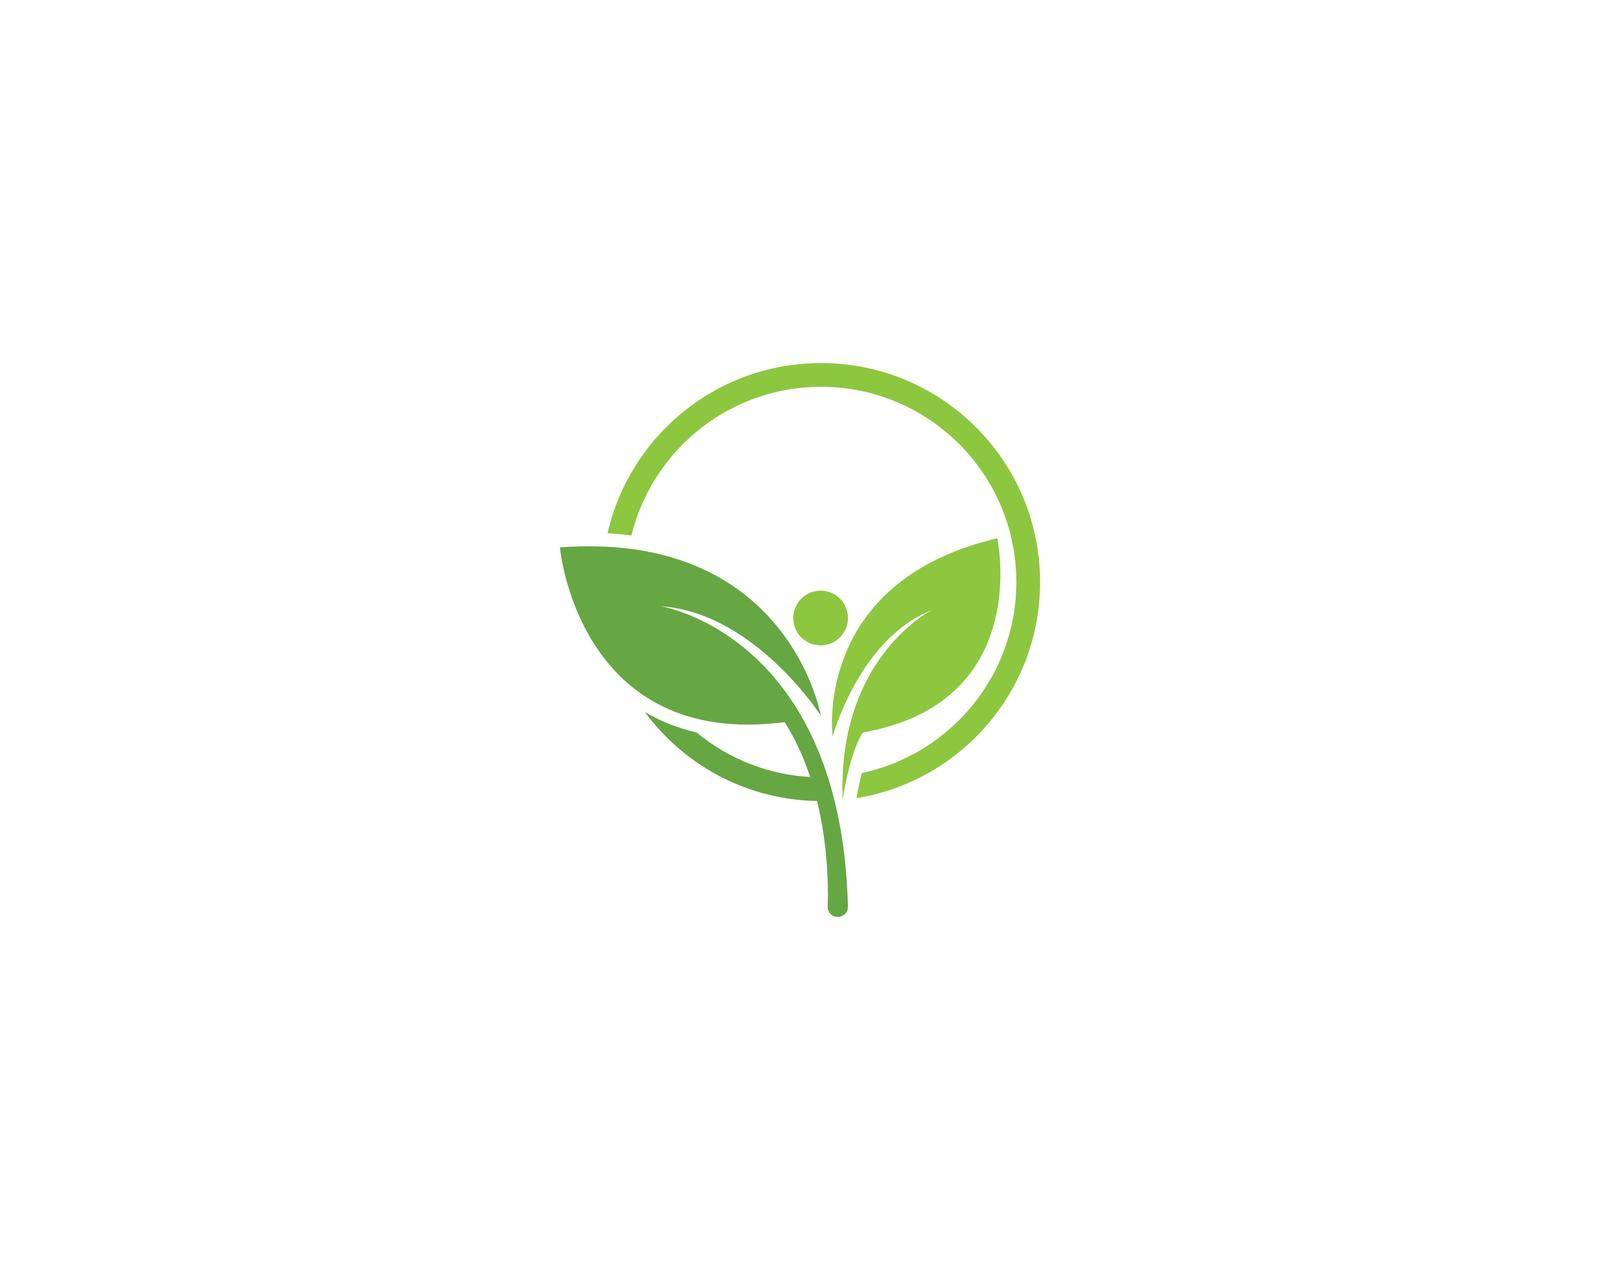 green leaf logo vector by awk